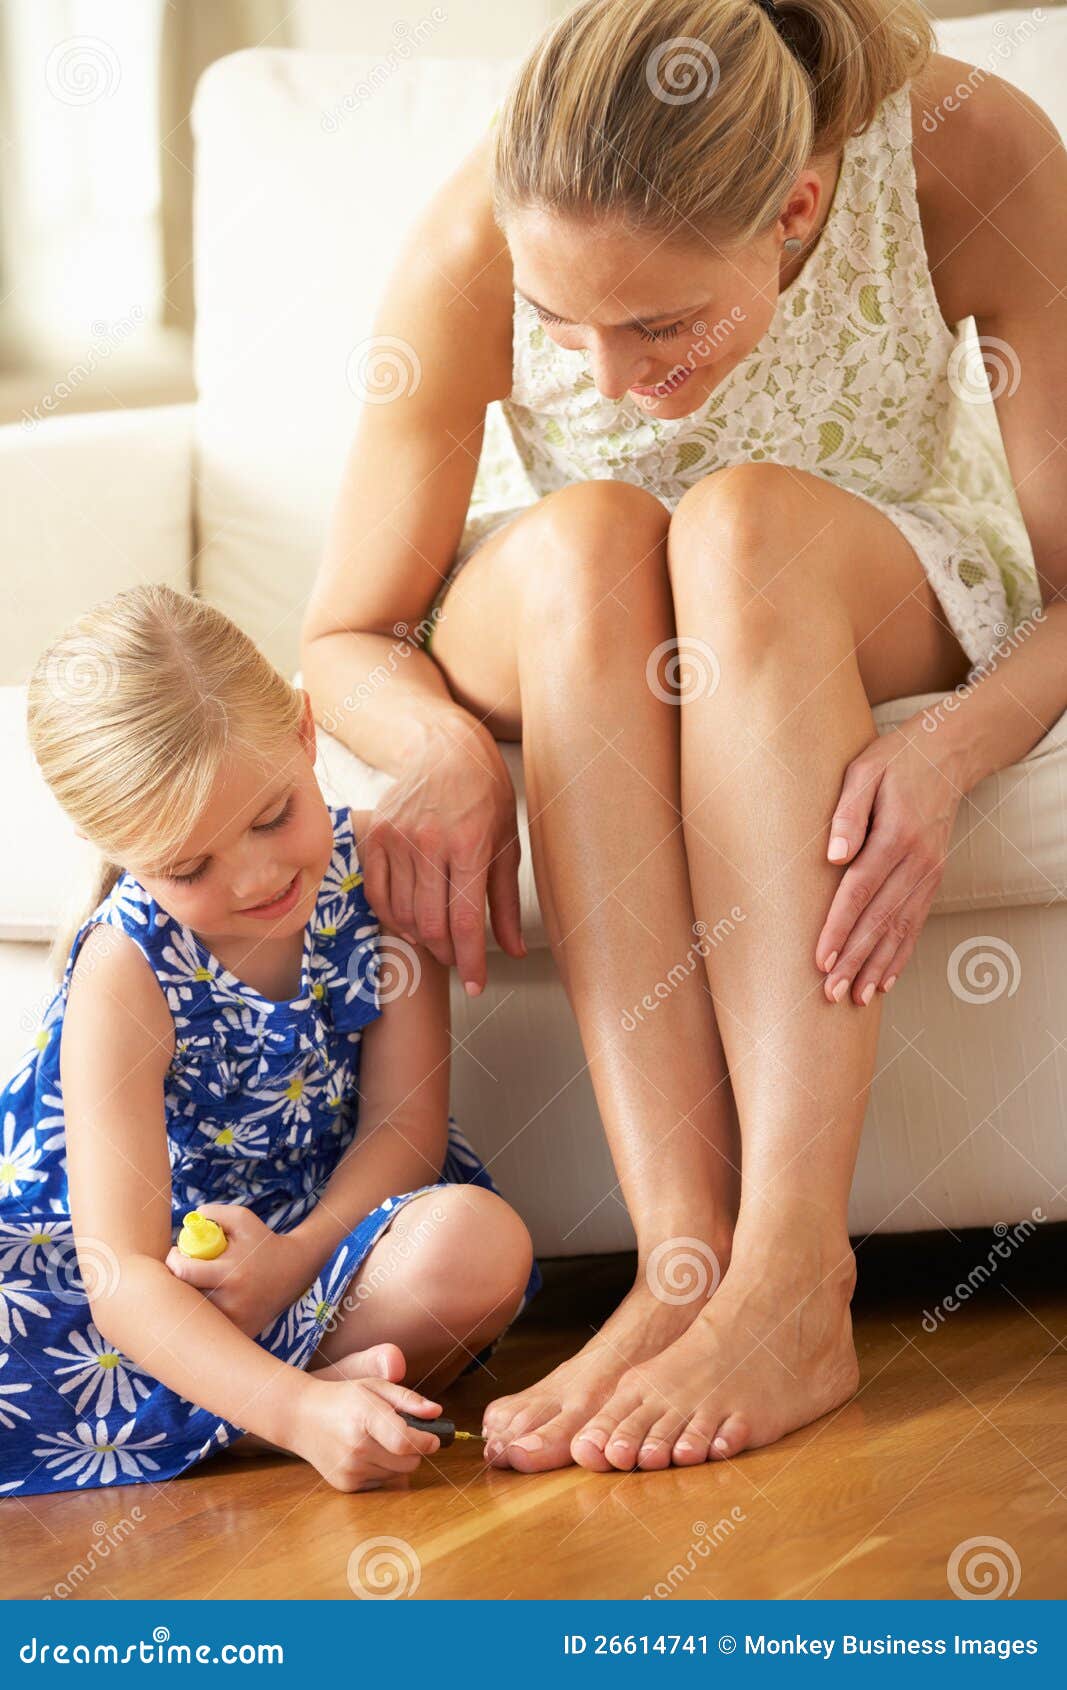 Папа лизал рассказ. Детские ступни девочек облизывают. Девочка красит ногти на ногах маме. Мать и дочь ступни. Стопы детей девочек.